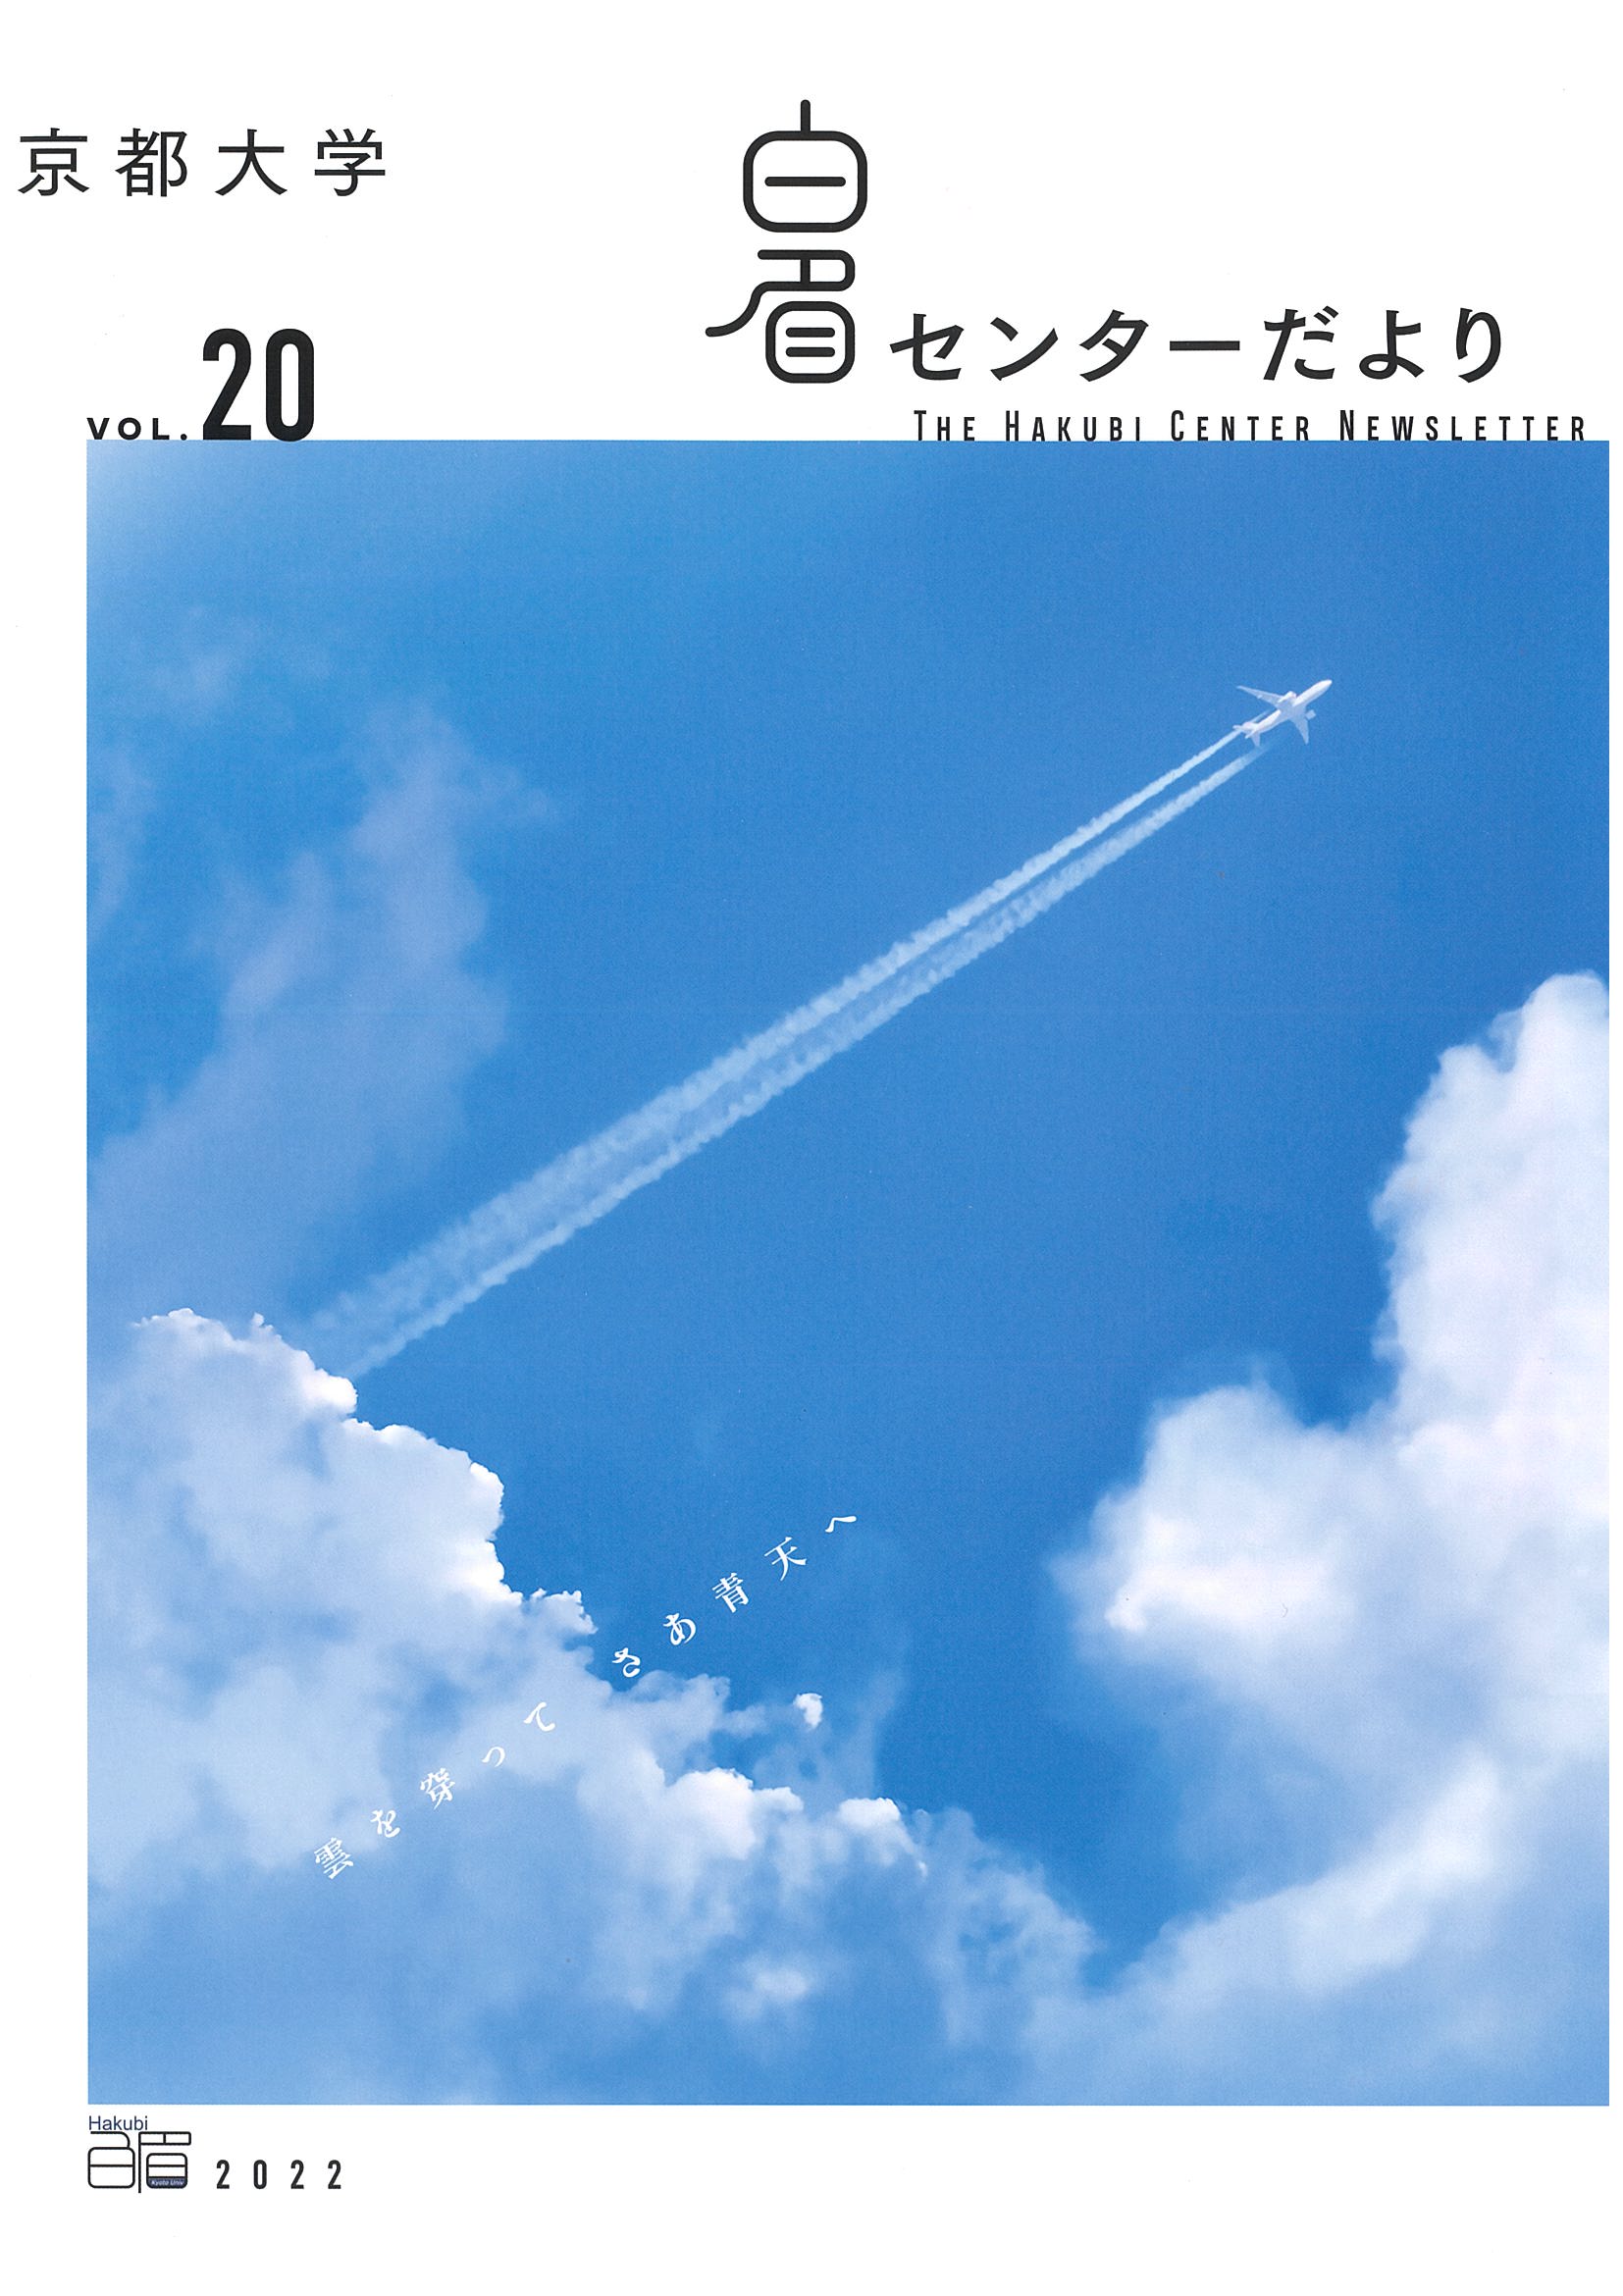 The Kyoto University Hakubi Center Newsletter, Vol. 20 (in Japanese) (2022)